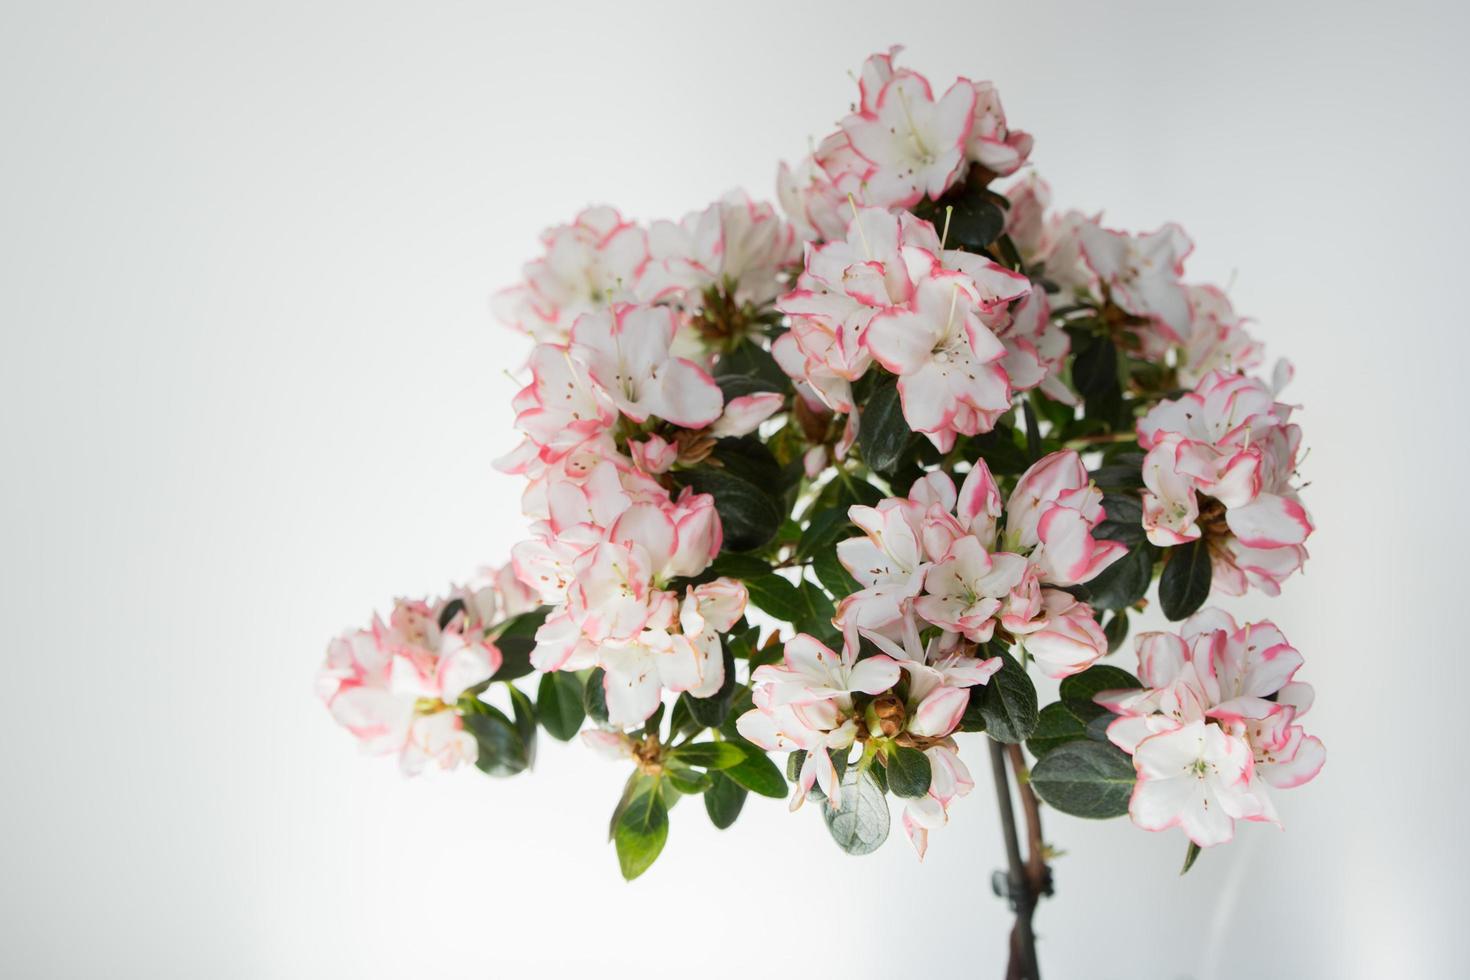 azálea florescendo com flores rosa e brancas. fundo branco foto